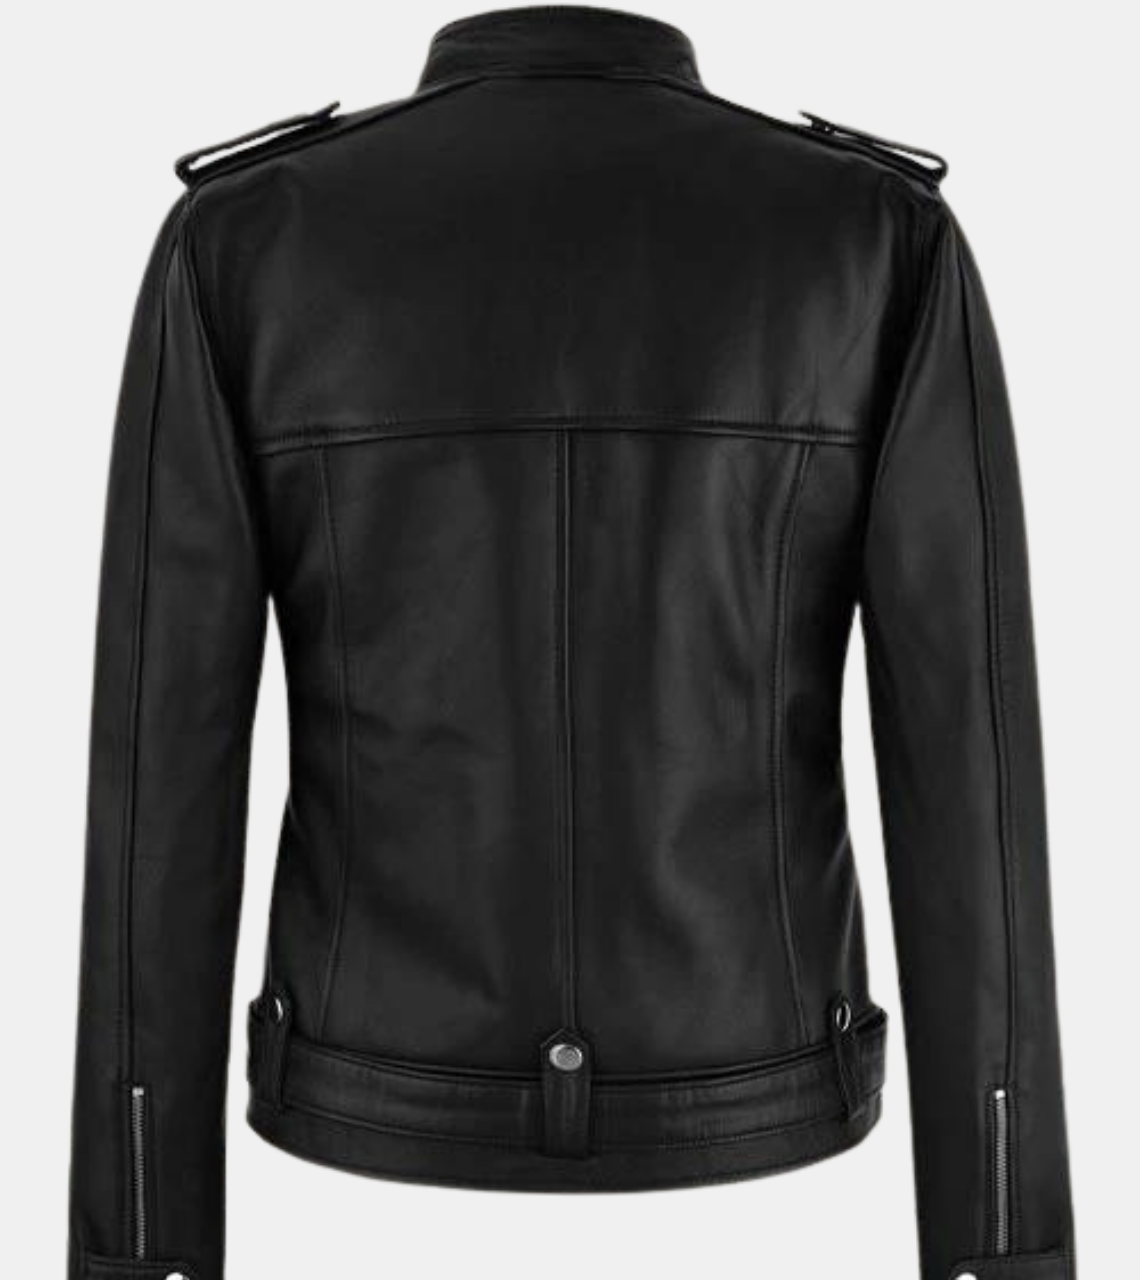  Irvine Women's Black Leather Jacket Back